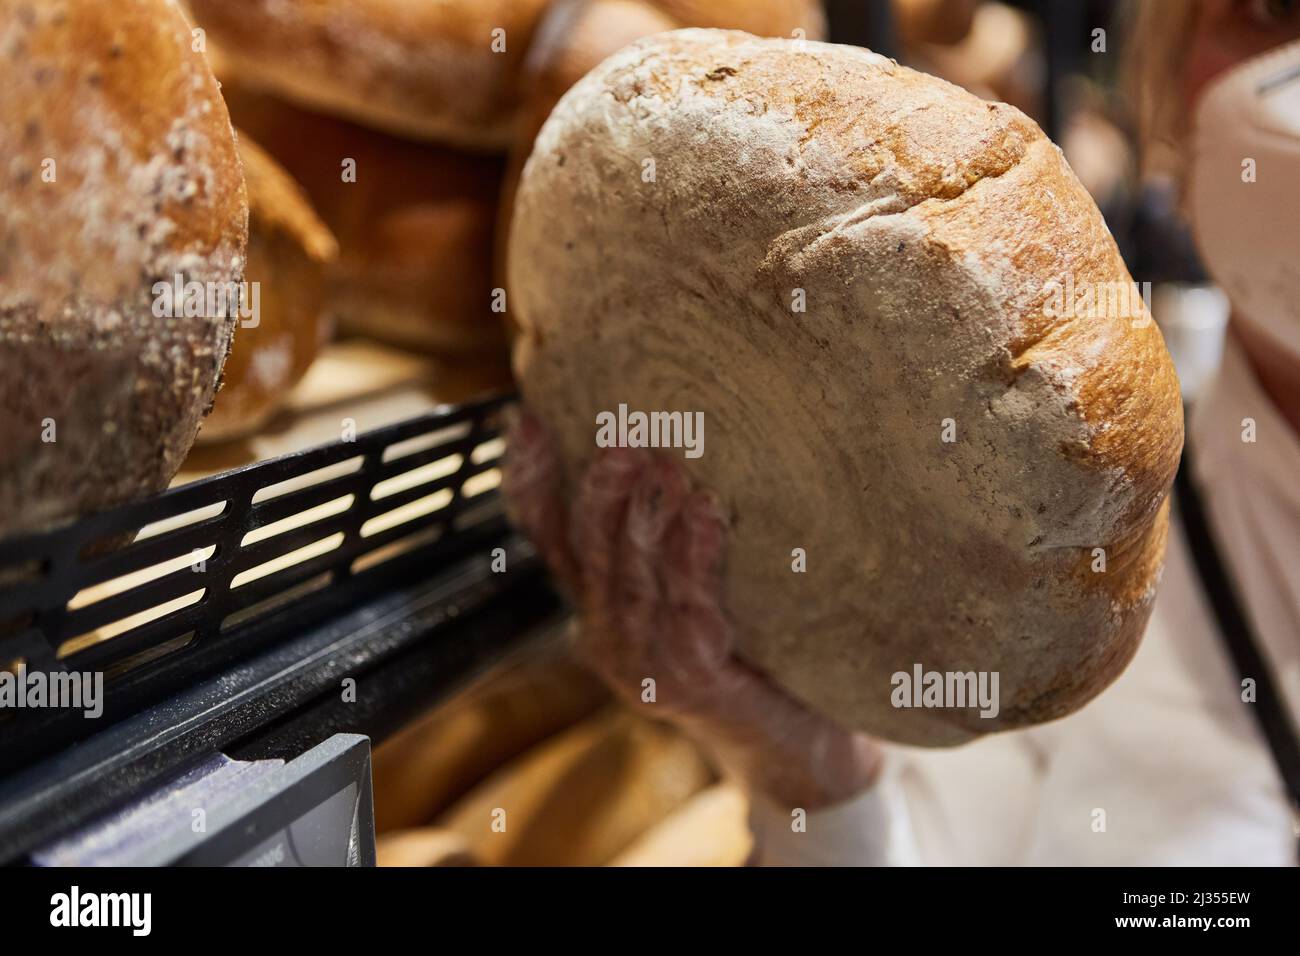 Le client prend un pain de l'étagère de la boulangerie comme un concept d'aliment de base Banque D'Images